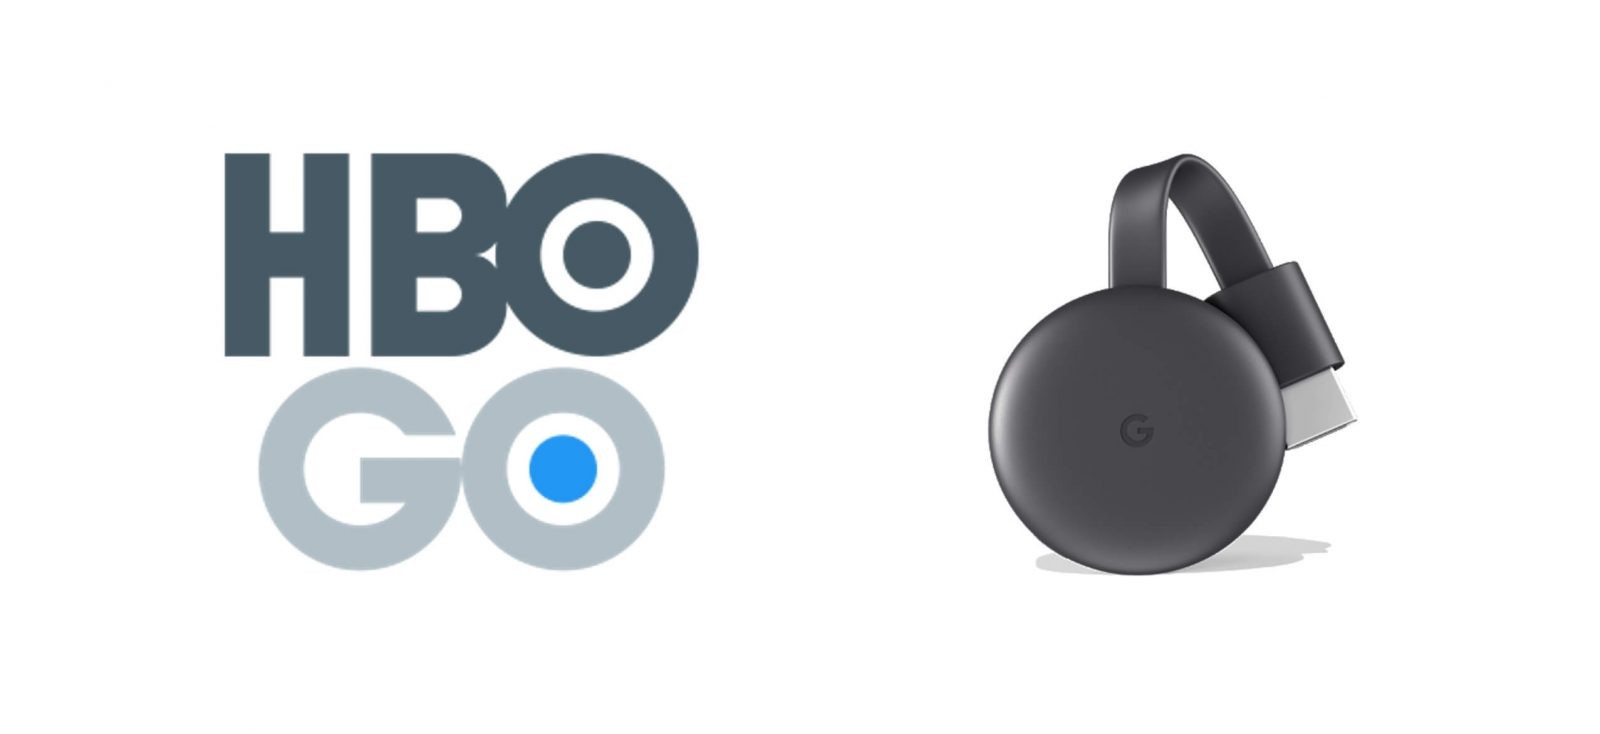 Chromecast HBO GO: كيفية الإعداد والإرسال